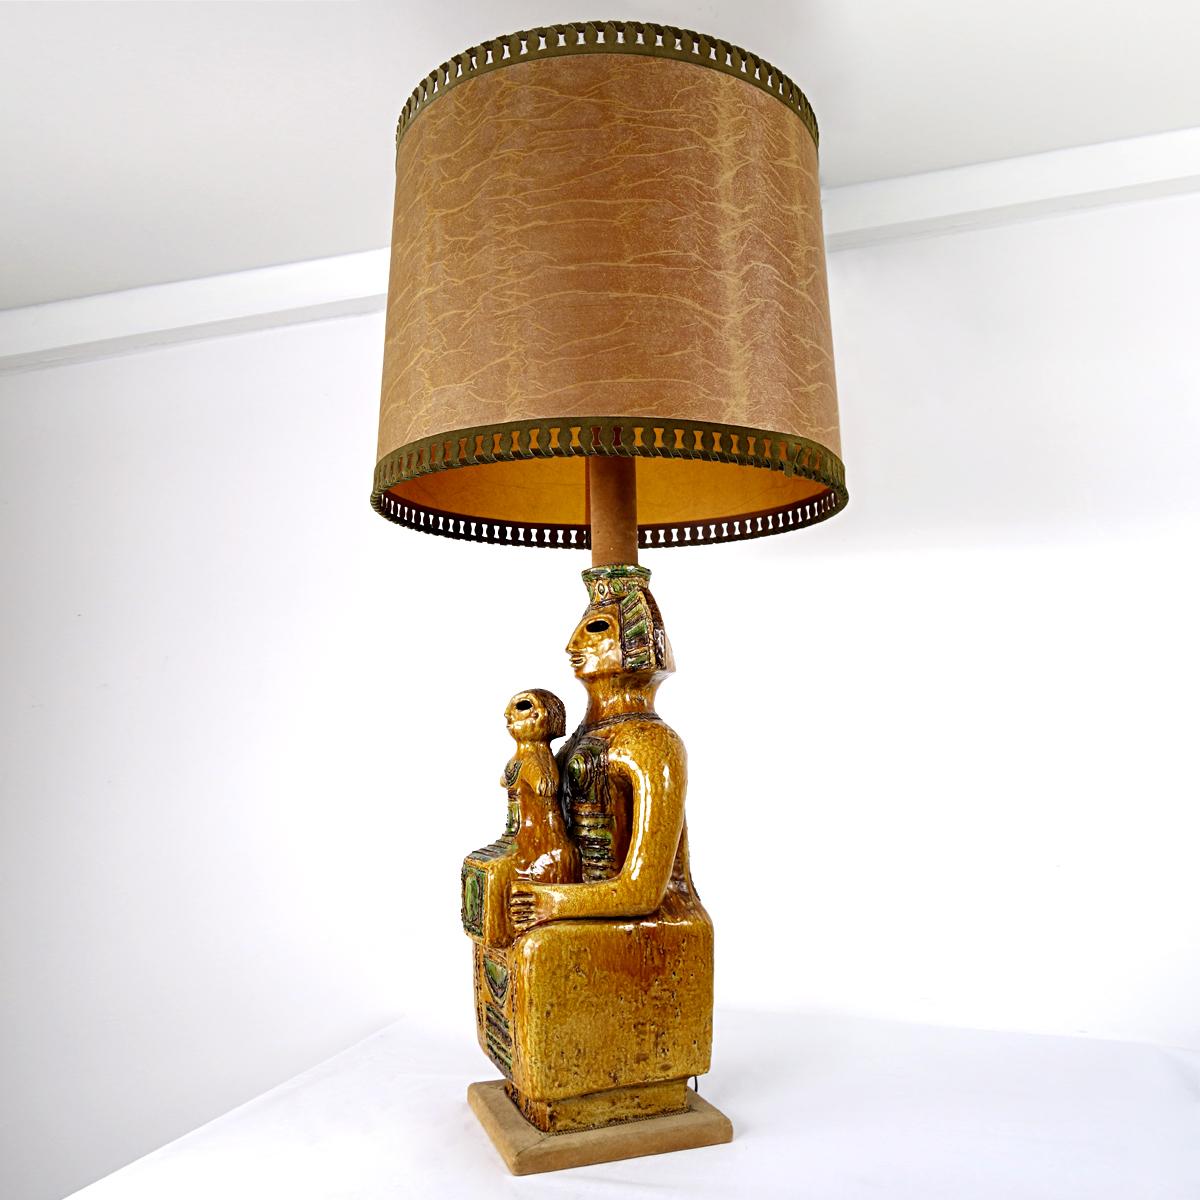 Ce lampadaire ou lampe de table de style maya est une pièce impressionnante.
Son pied est une grande statue en céramique représentant une reine et son enfant, ou un roi et son successeur, dans des tons bruns et verts. 
La partie inférieure du